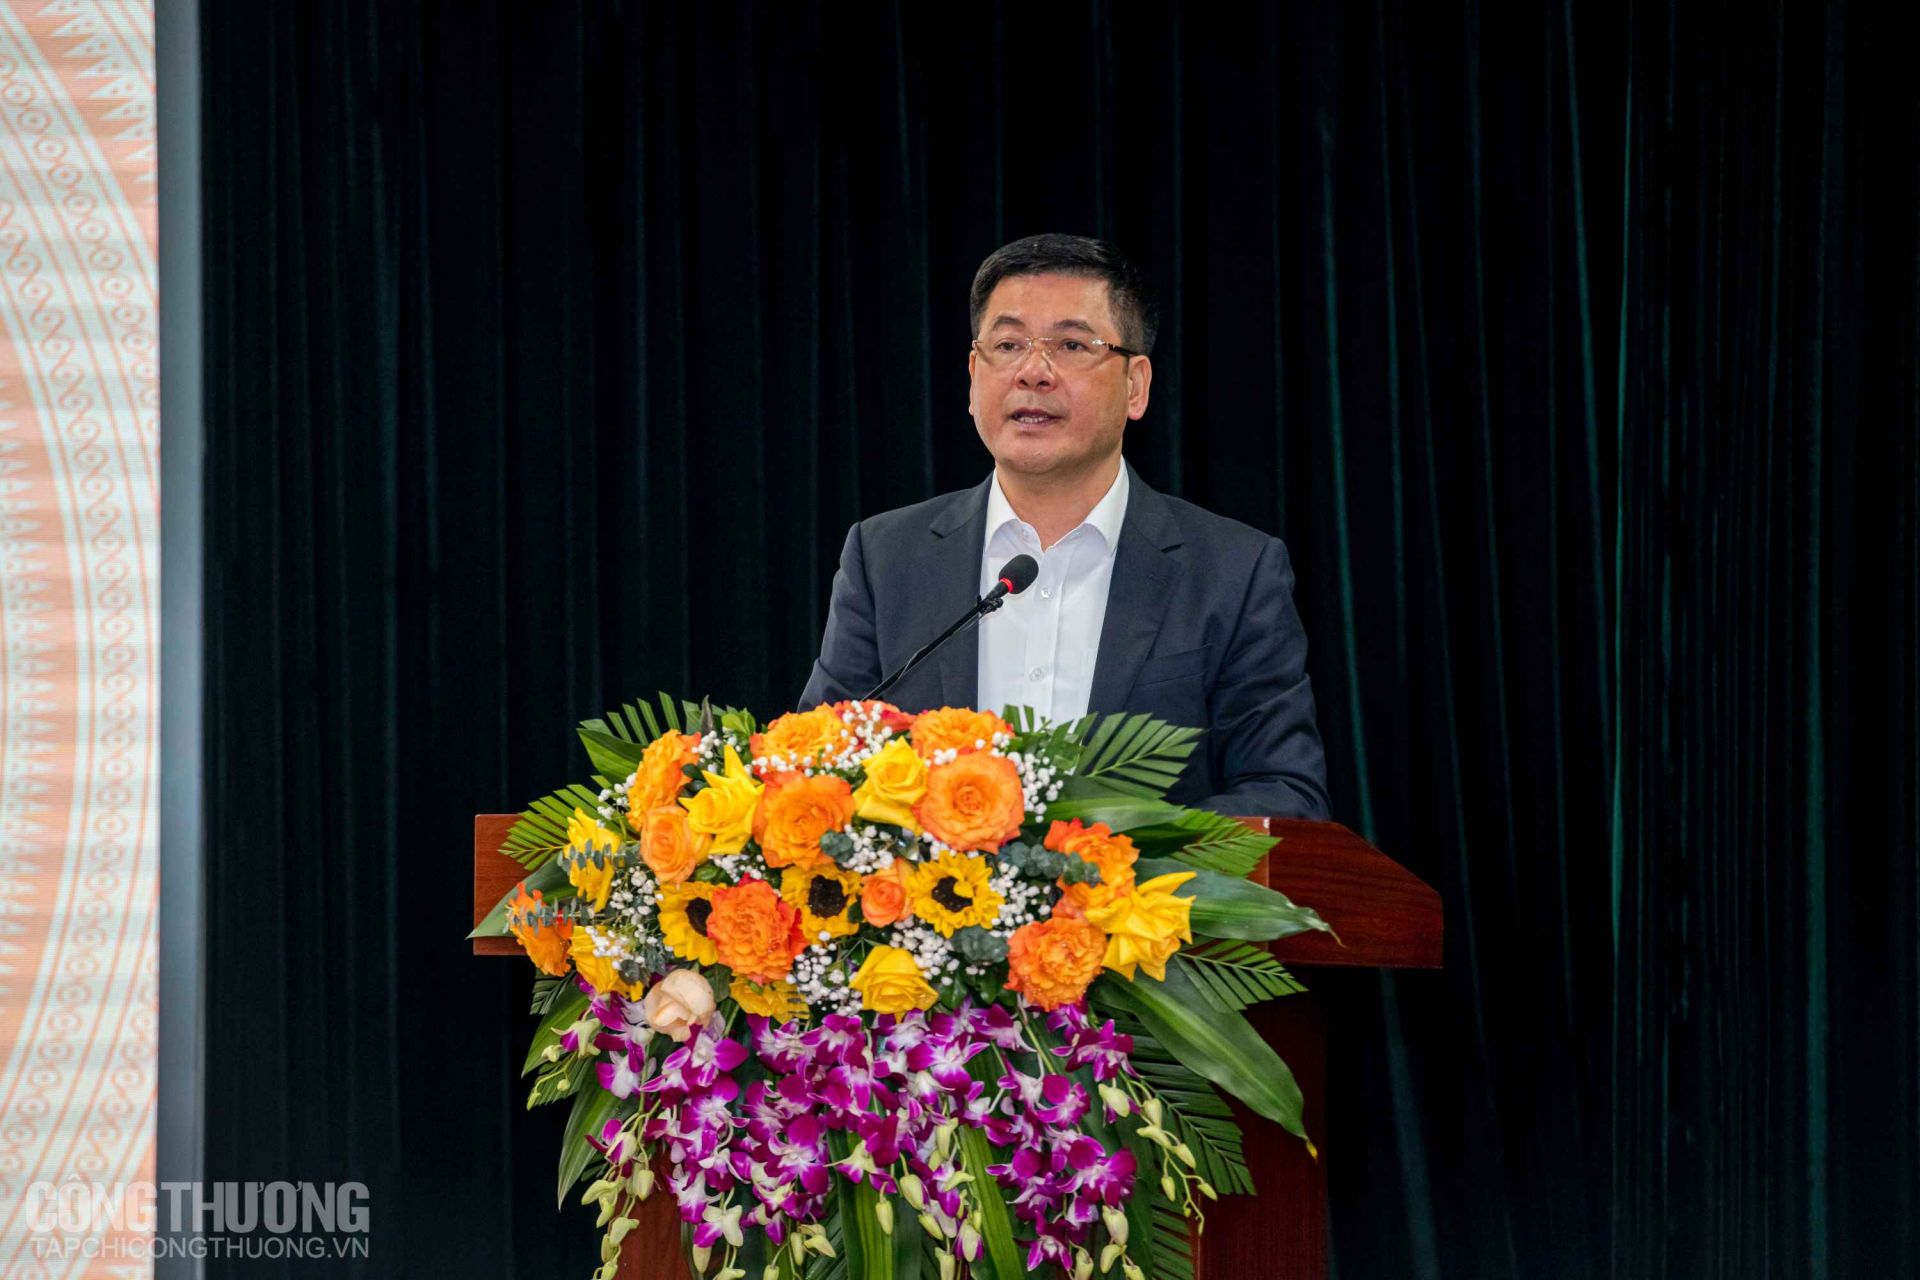 Bộ trưởng Nguyễn Hồng Diên cho biết, tháng 1/2023, dù thời gian làm việc chỉ bằng 1/3 các tháng trước, cán cân thương mại hàng hóa vẫn duy trì xuất siêu 3,6 tỷ USD; tổng mức bán lẻ hàng hóa và doanh thu dịch vụ tăng 20%